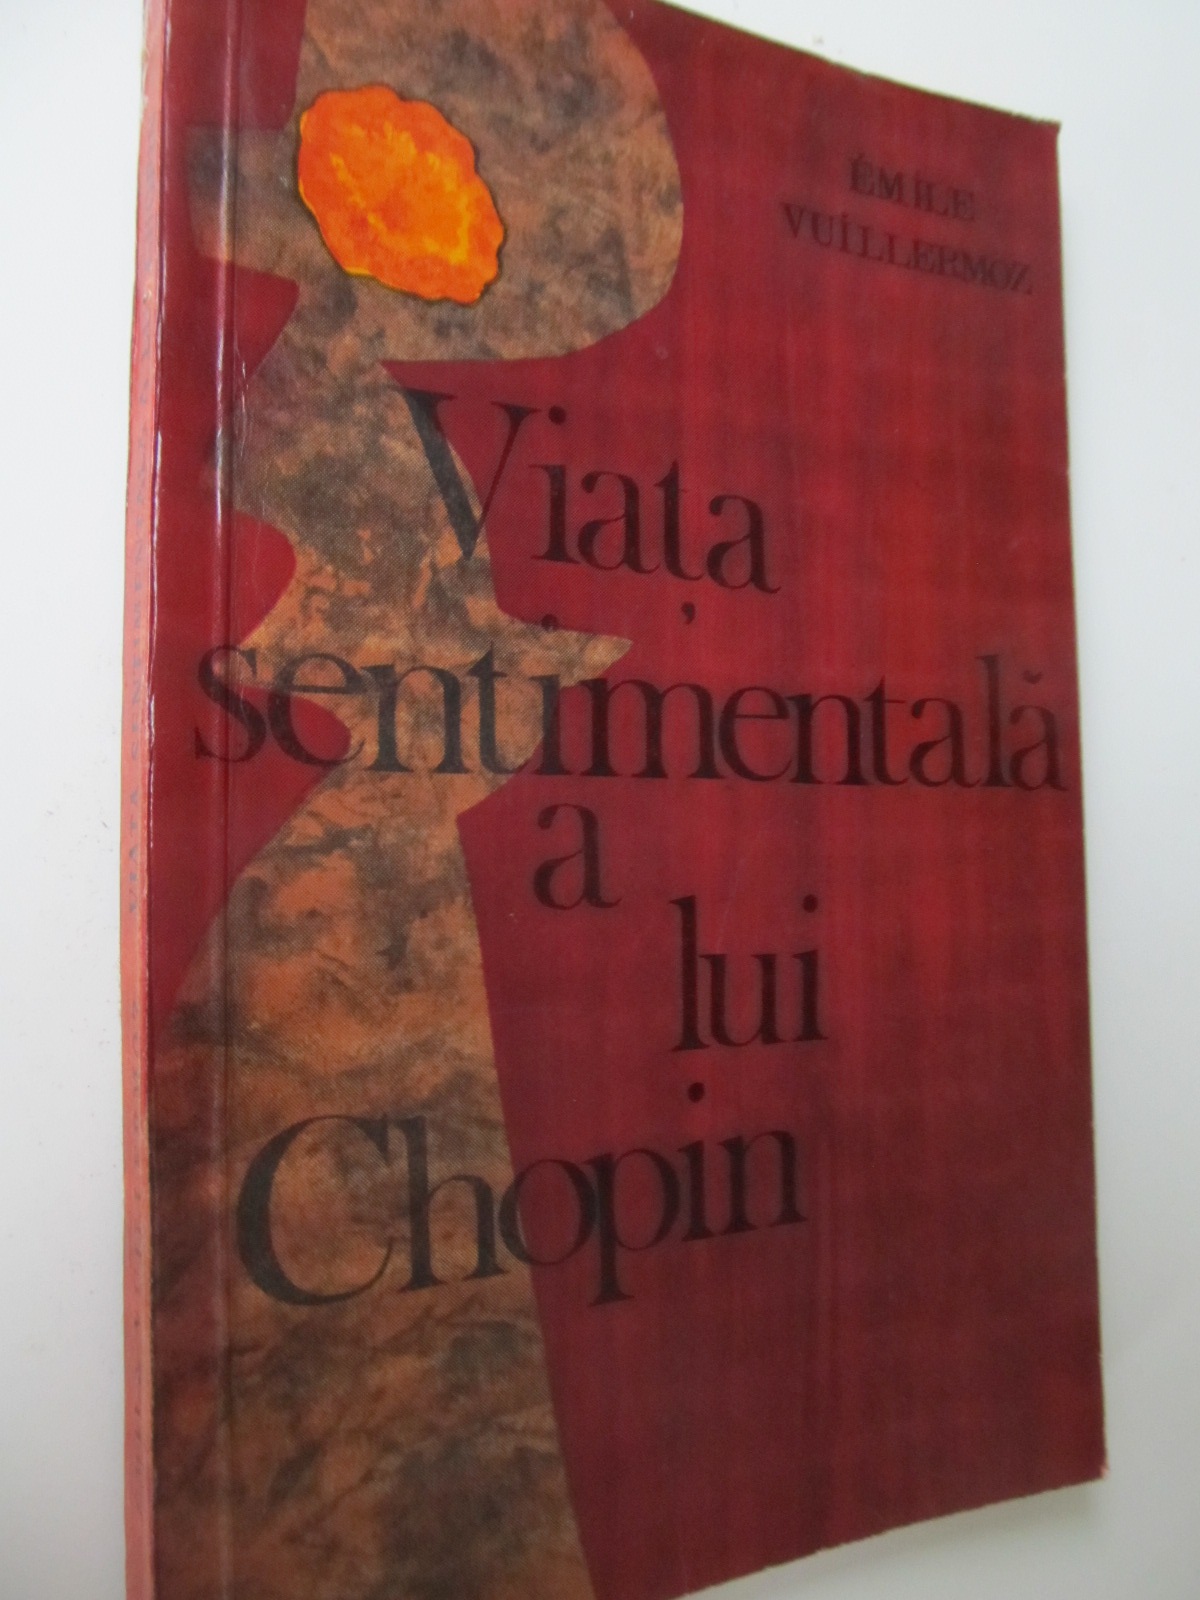 Viata sentimentala a lui Chopin - Emile Vuillermoz | Detalii carte